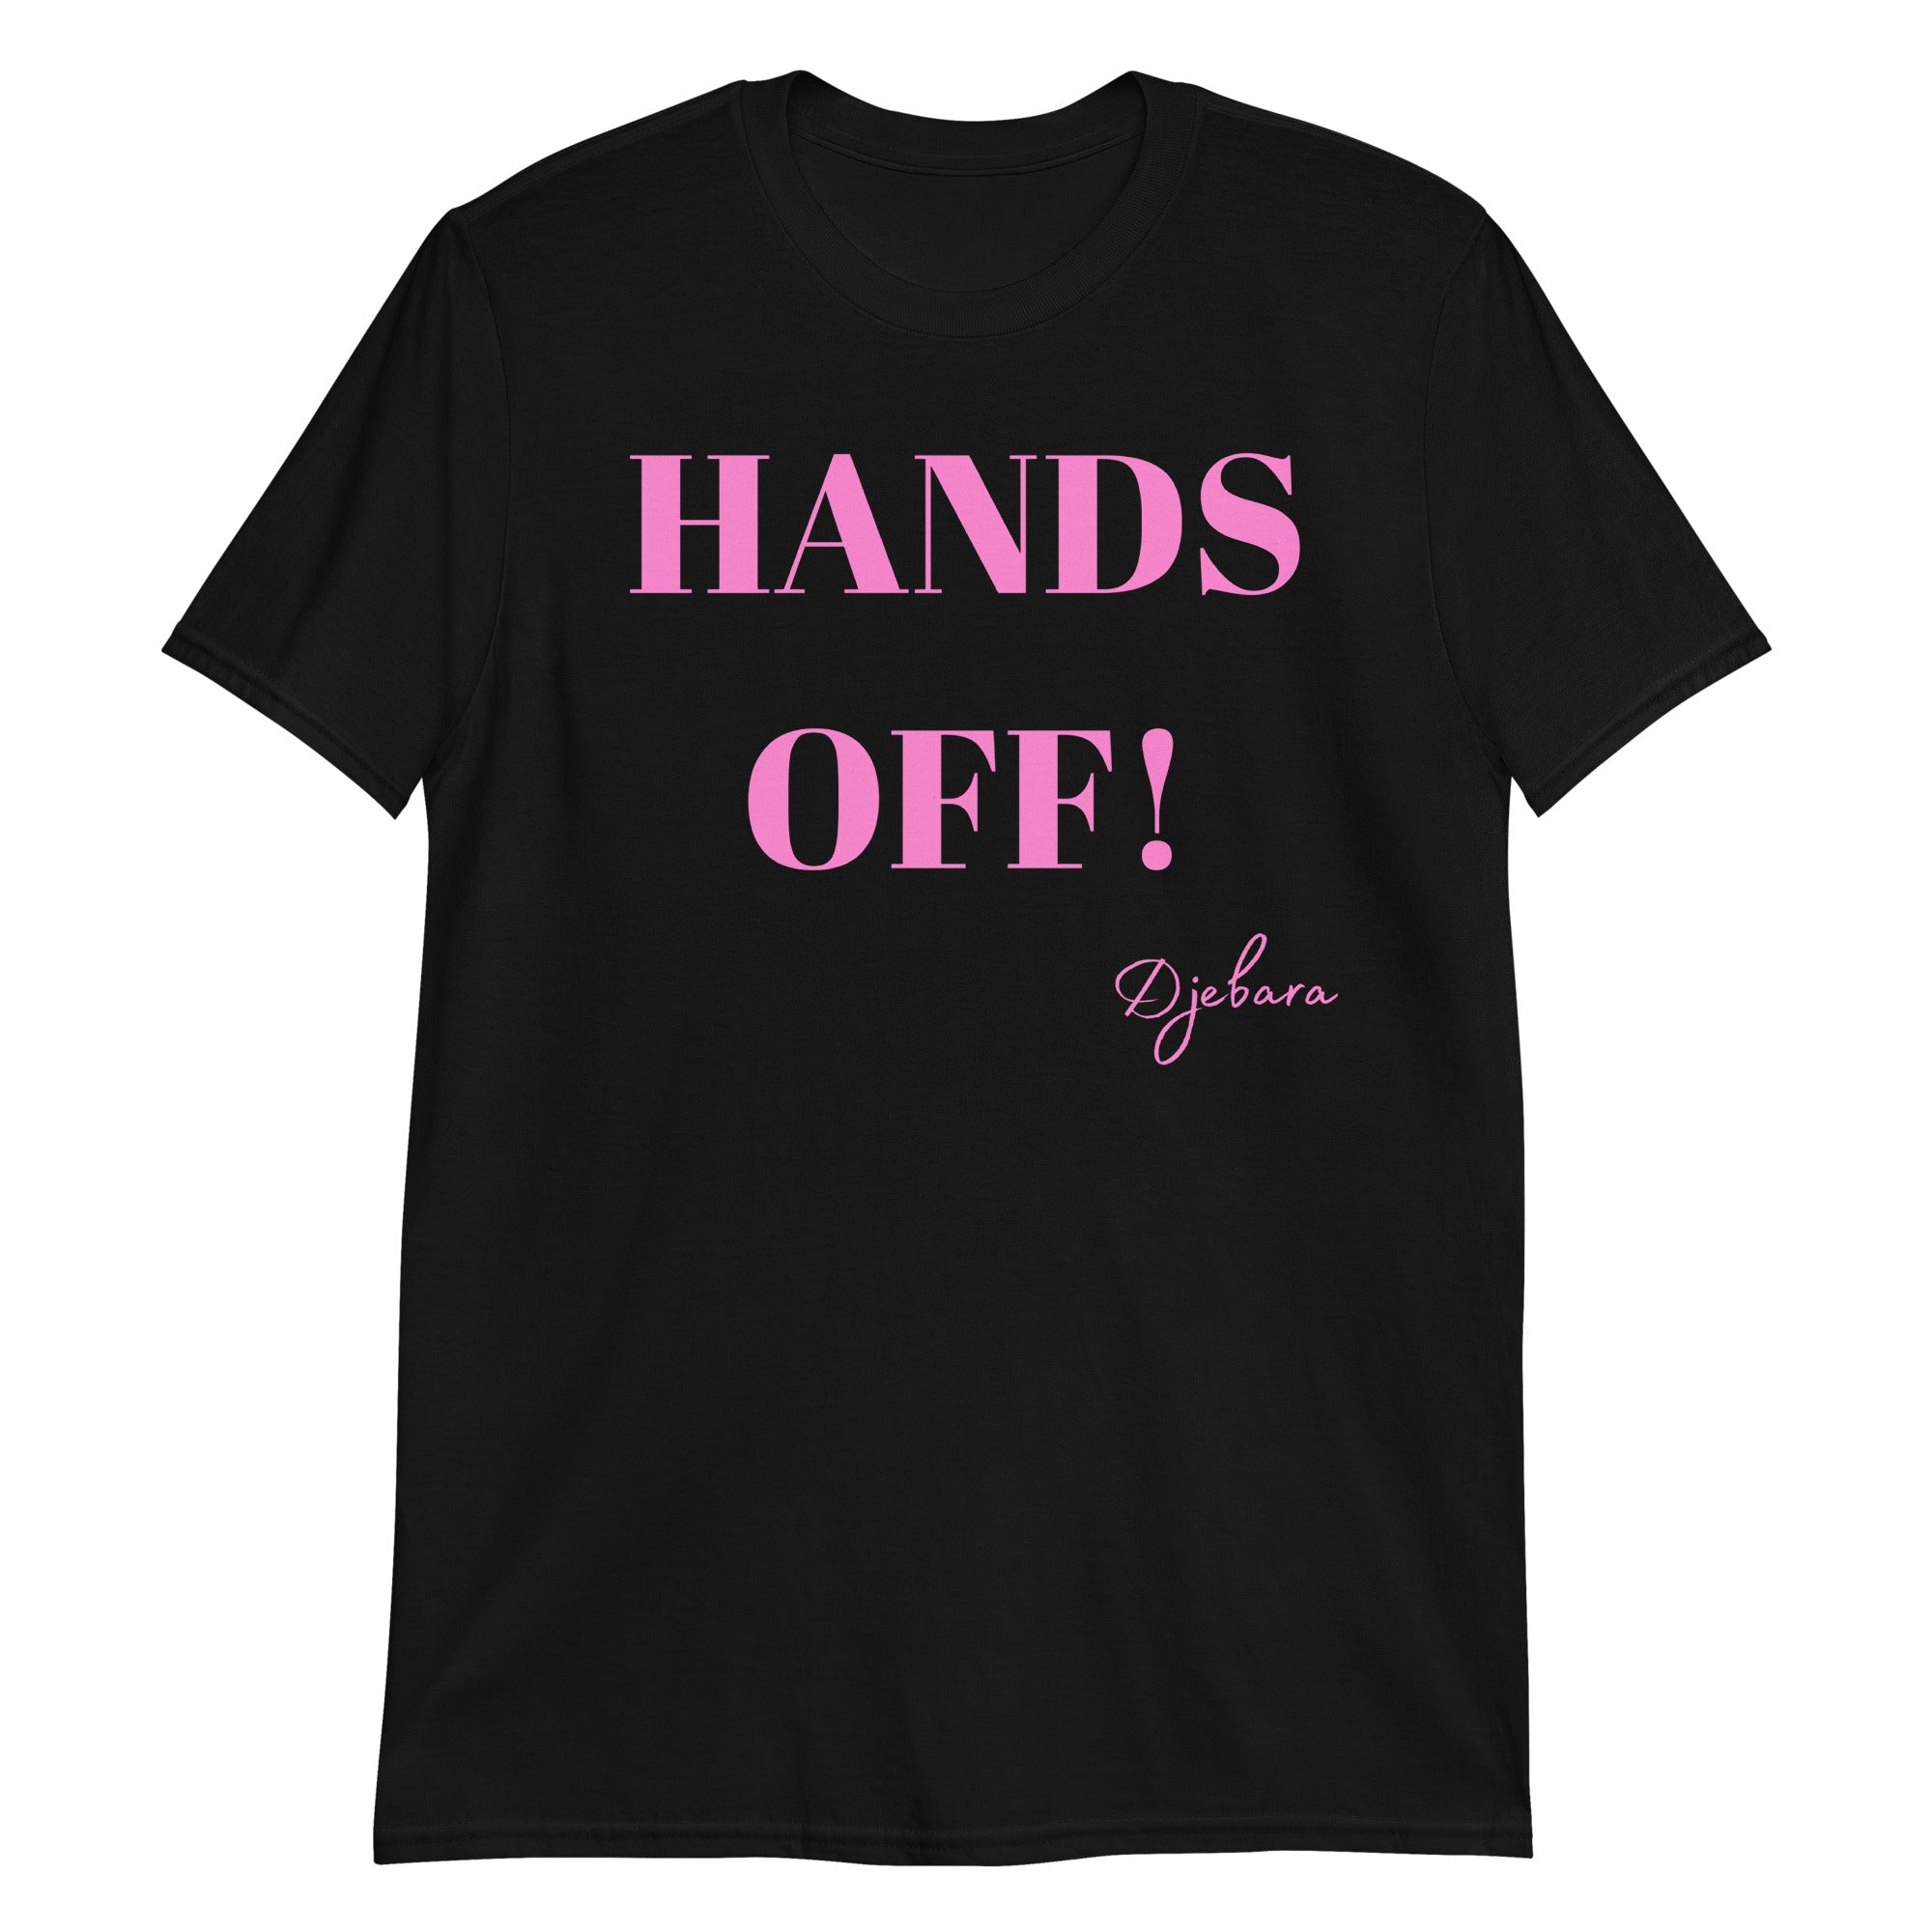 HANDS OFF! Short-Sleeve Gildan Unisex T-Shirt (Pink) S-3XL